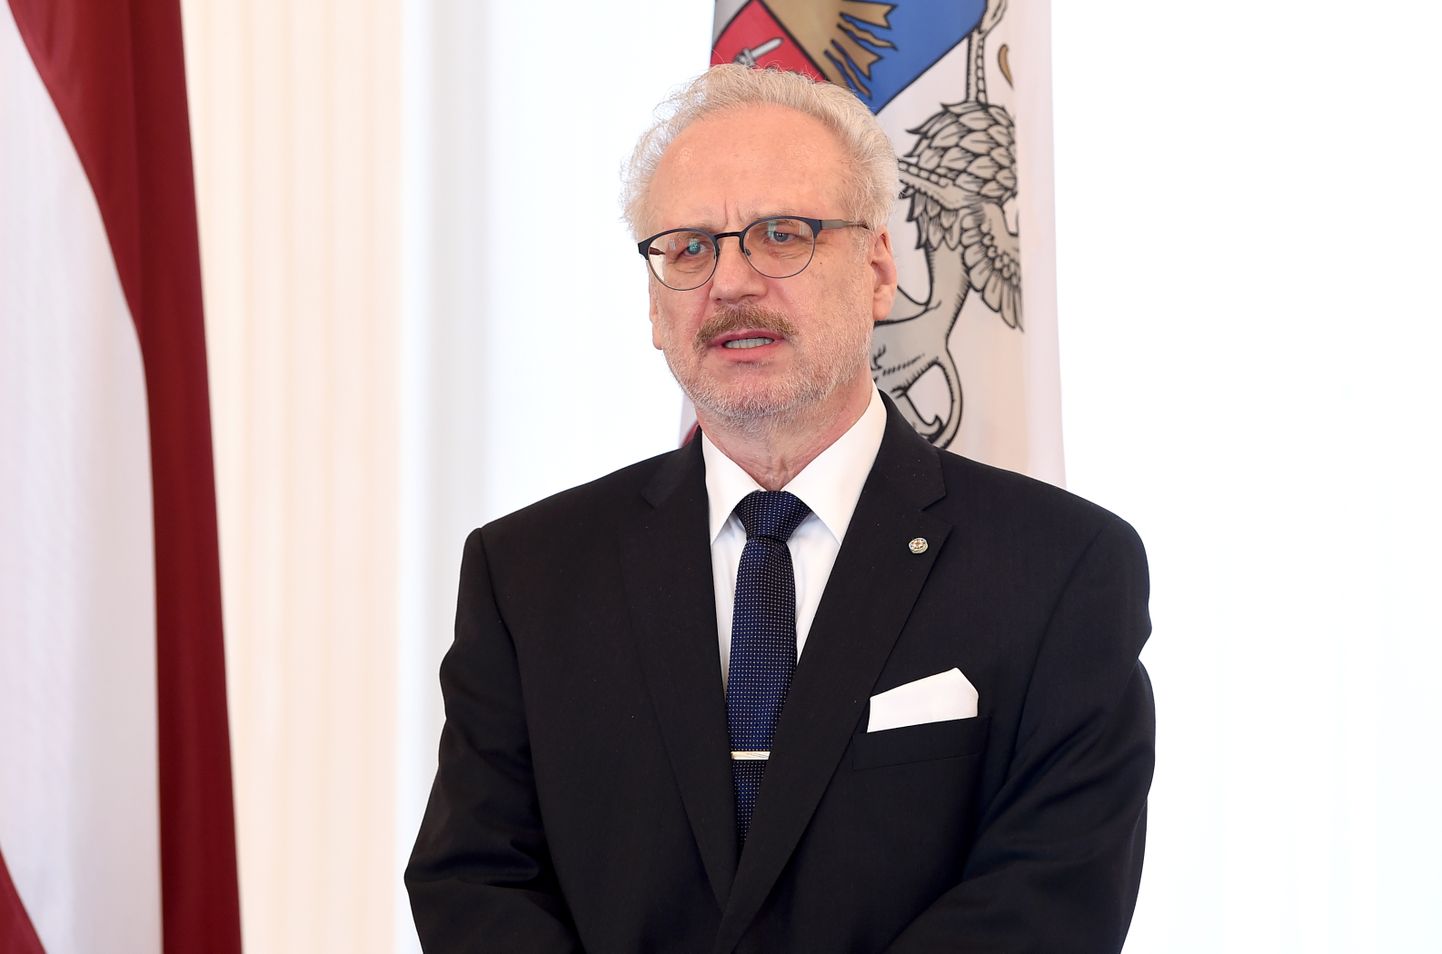 Valsts prezidents Egils Levits Triju Zvaigžņu ordeņa pasniegšanas ceremonijas laikā Rīgas pilī.